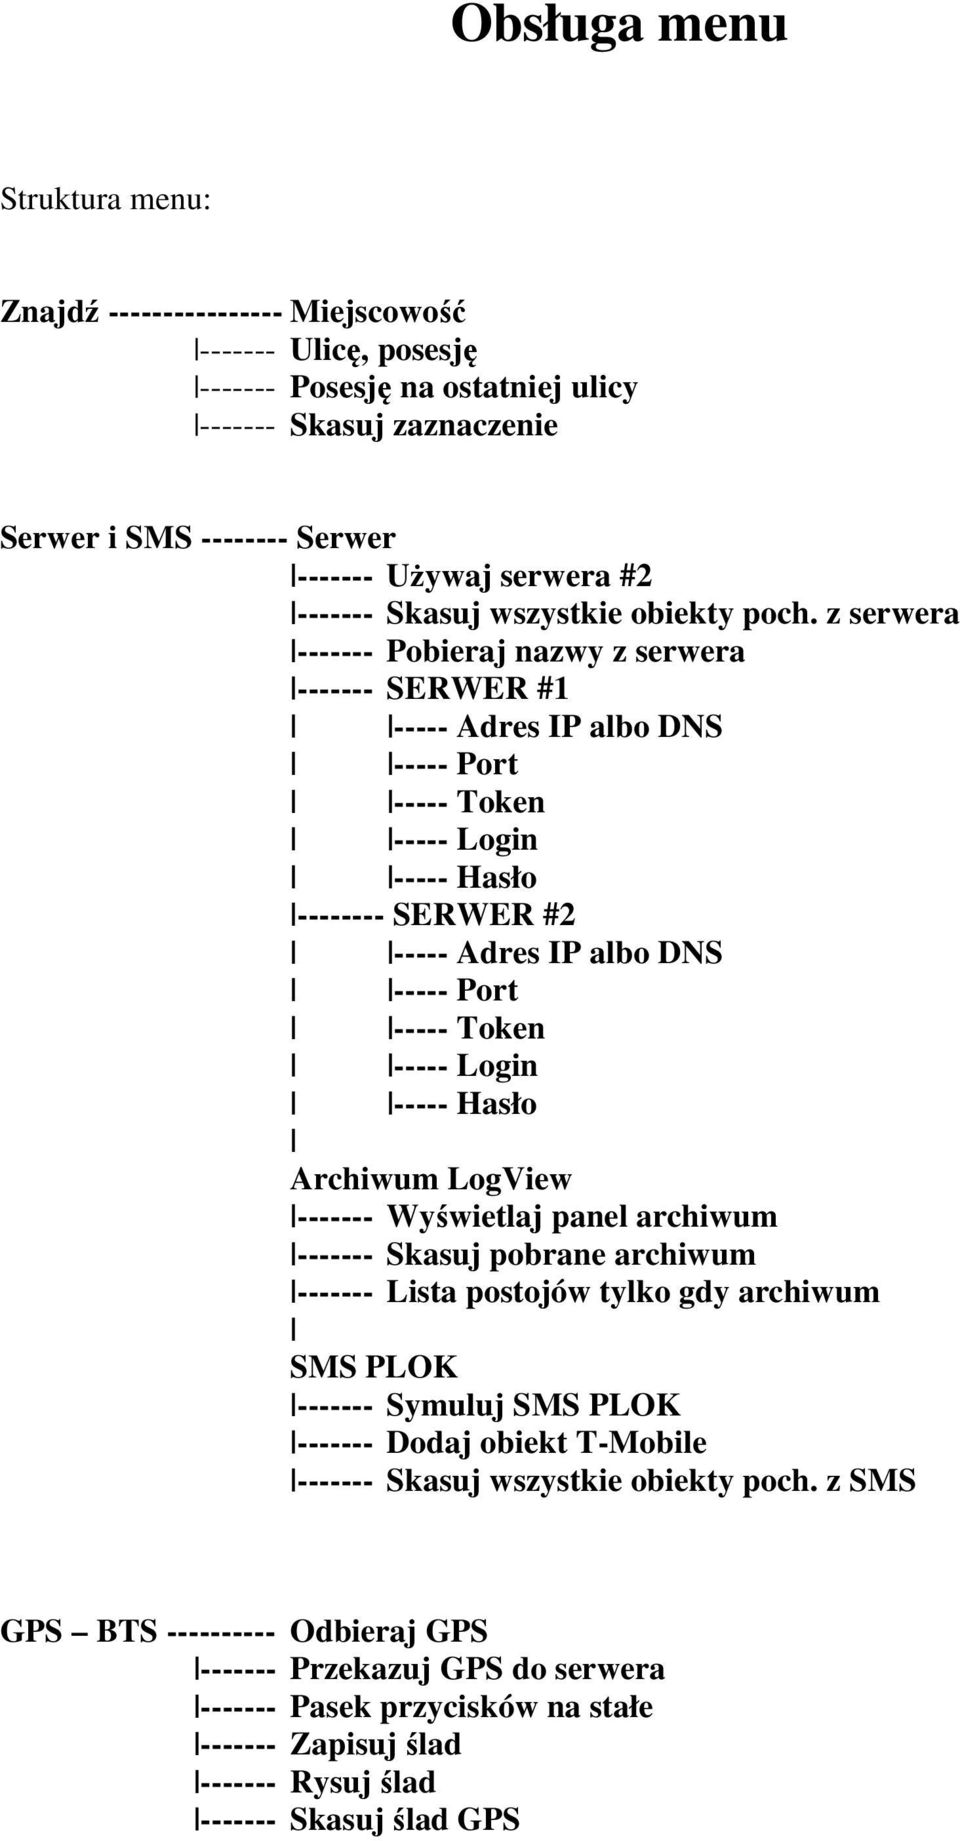 z serwera ------- Pobieraj nazwy z serwera ------- SERWER #1 ----- Adres IP albo DNS ----- Port ----- Token ----- Login ----- Hasło -------- SERWER #2 ----- Adres IP albo DNS ----- Port ----- Token